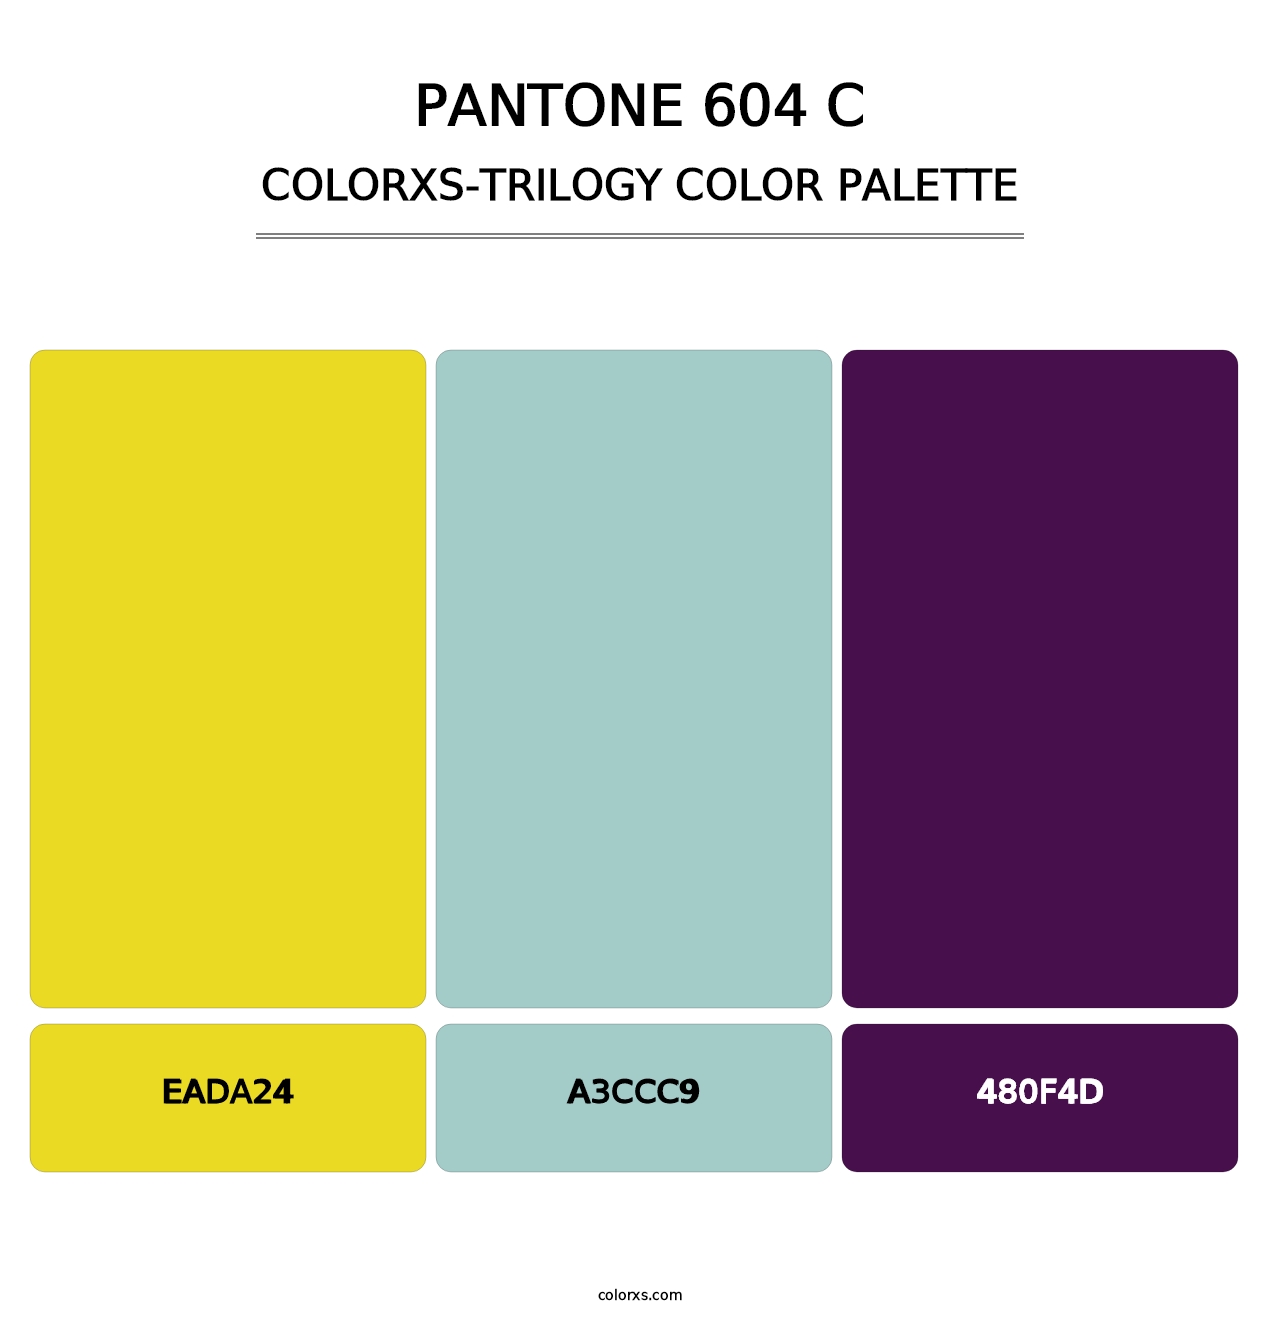 PANTONE 604 C - Colorxs Trilogy Palette